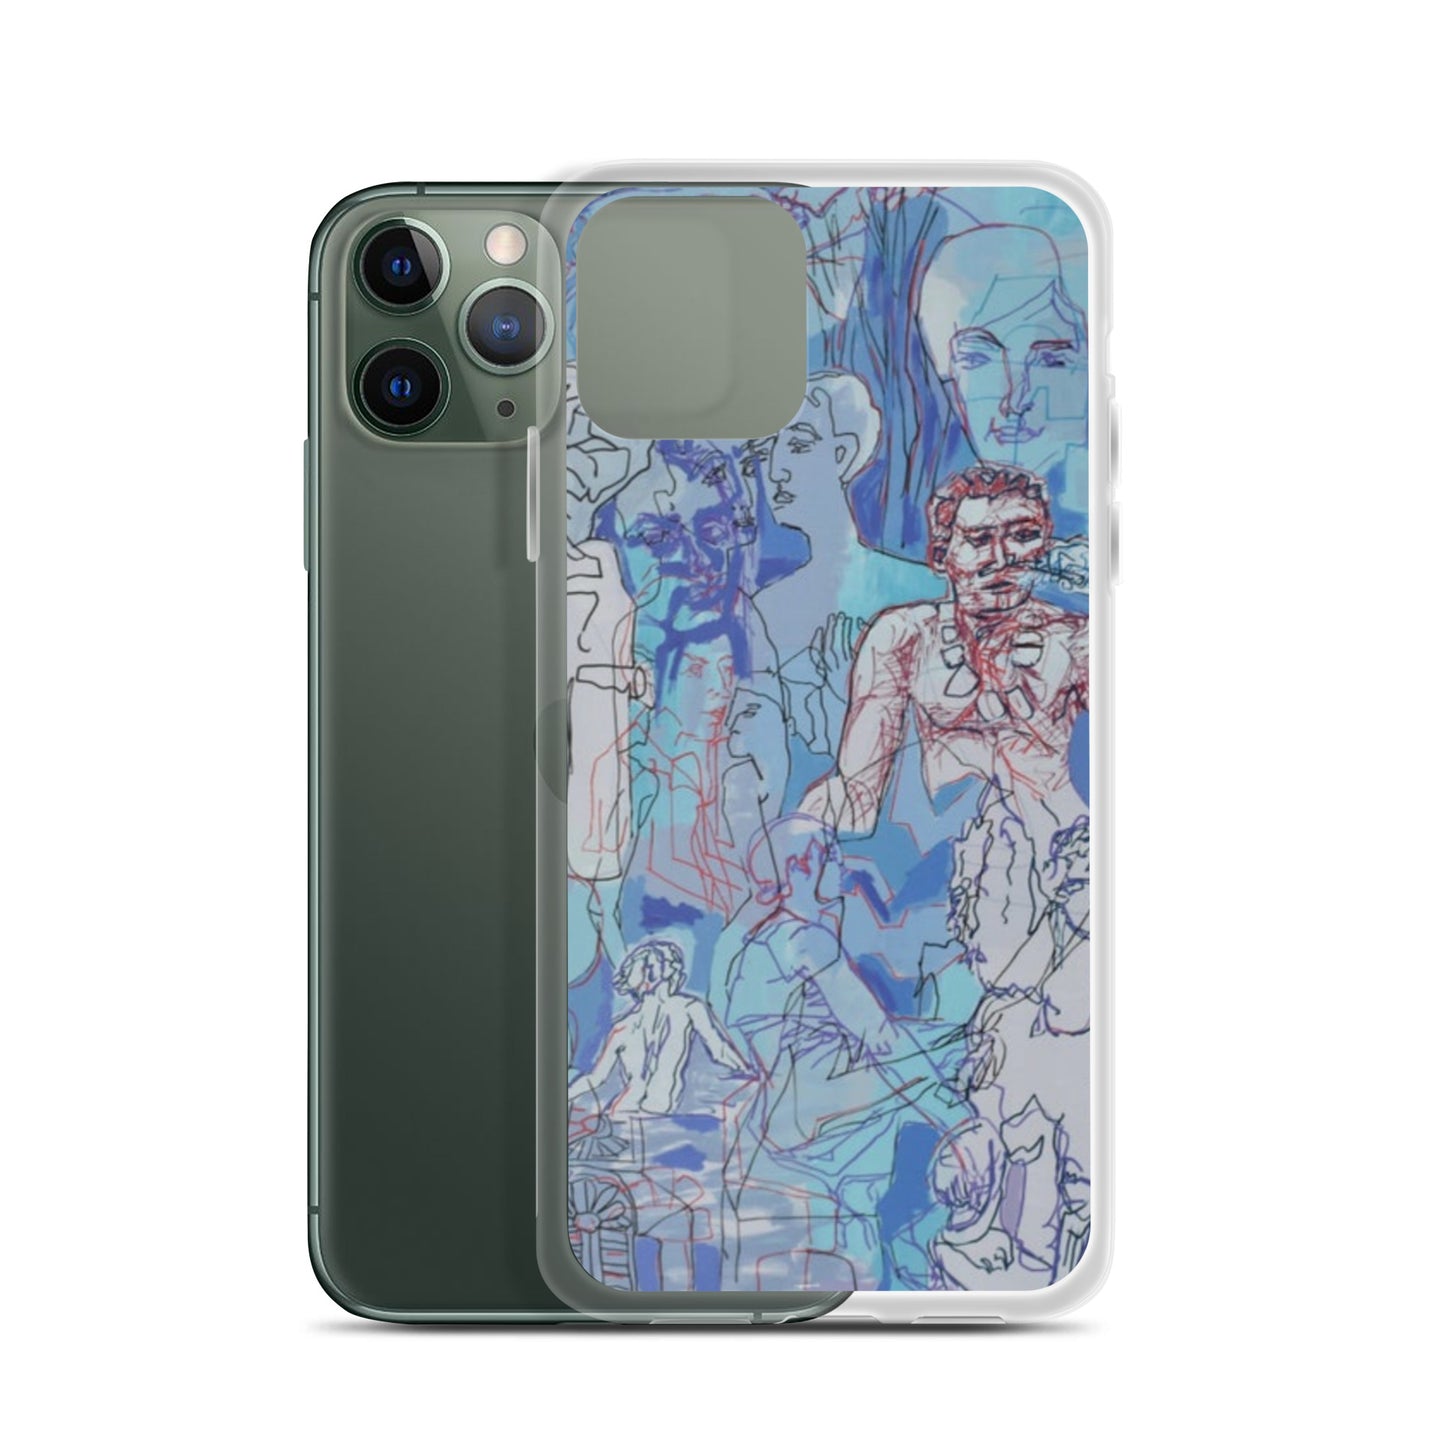 Blue Jungle: Original Art iPhone Case